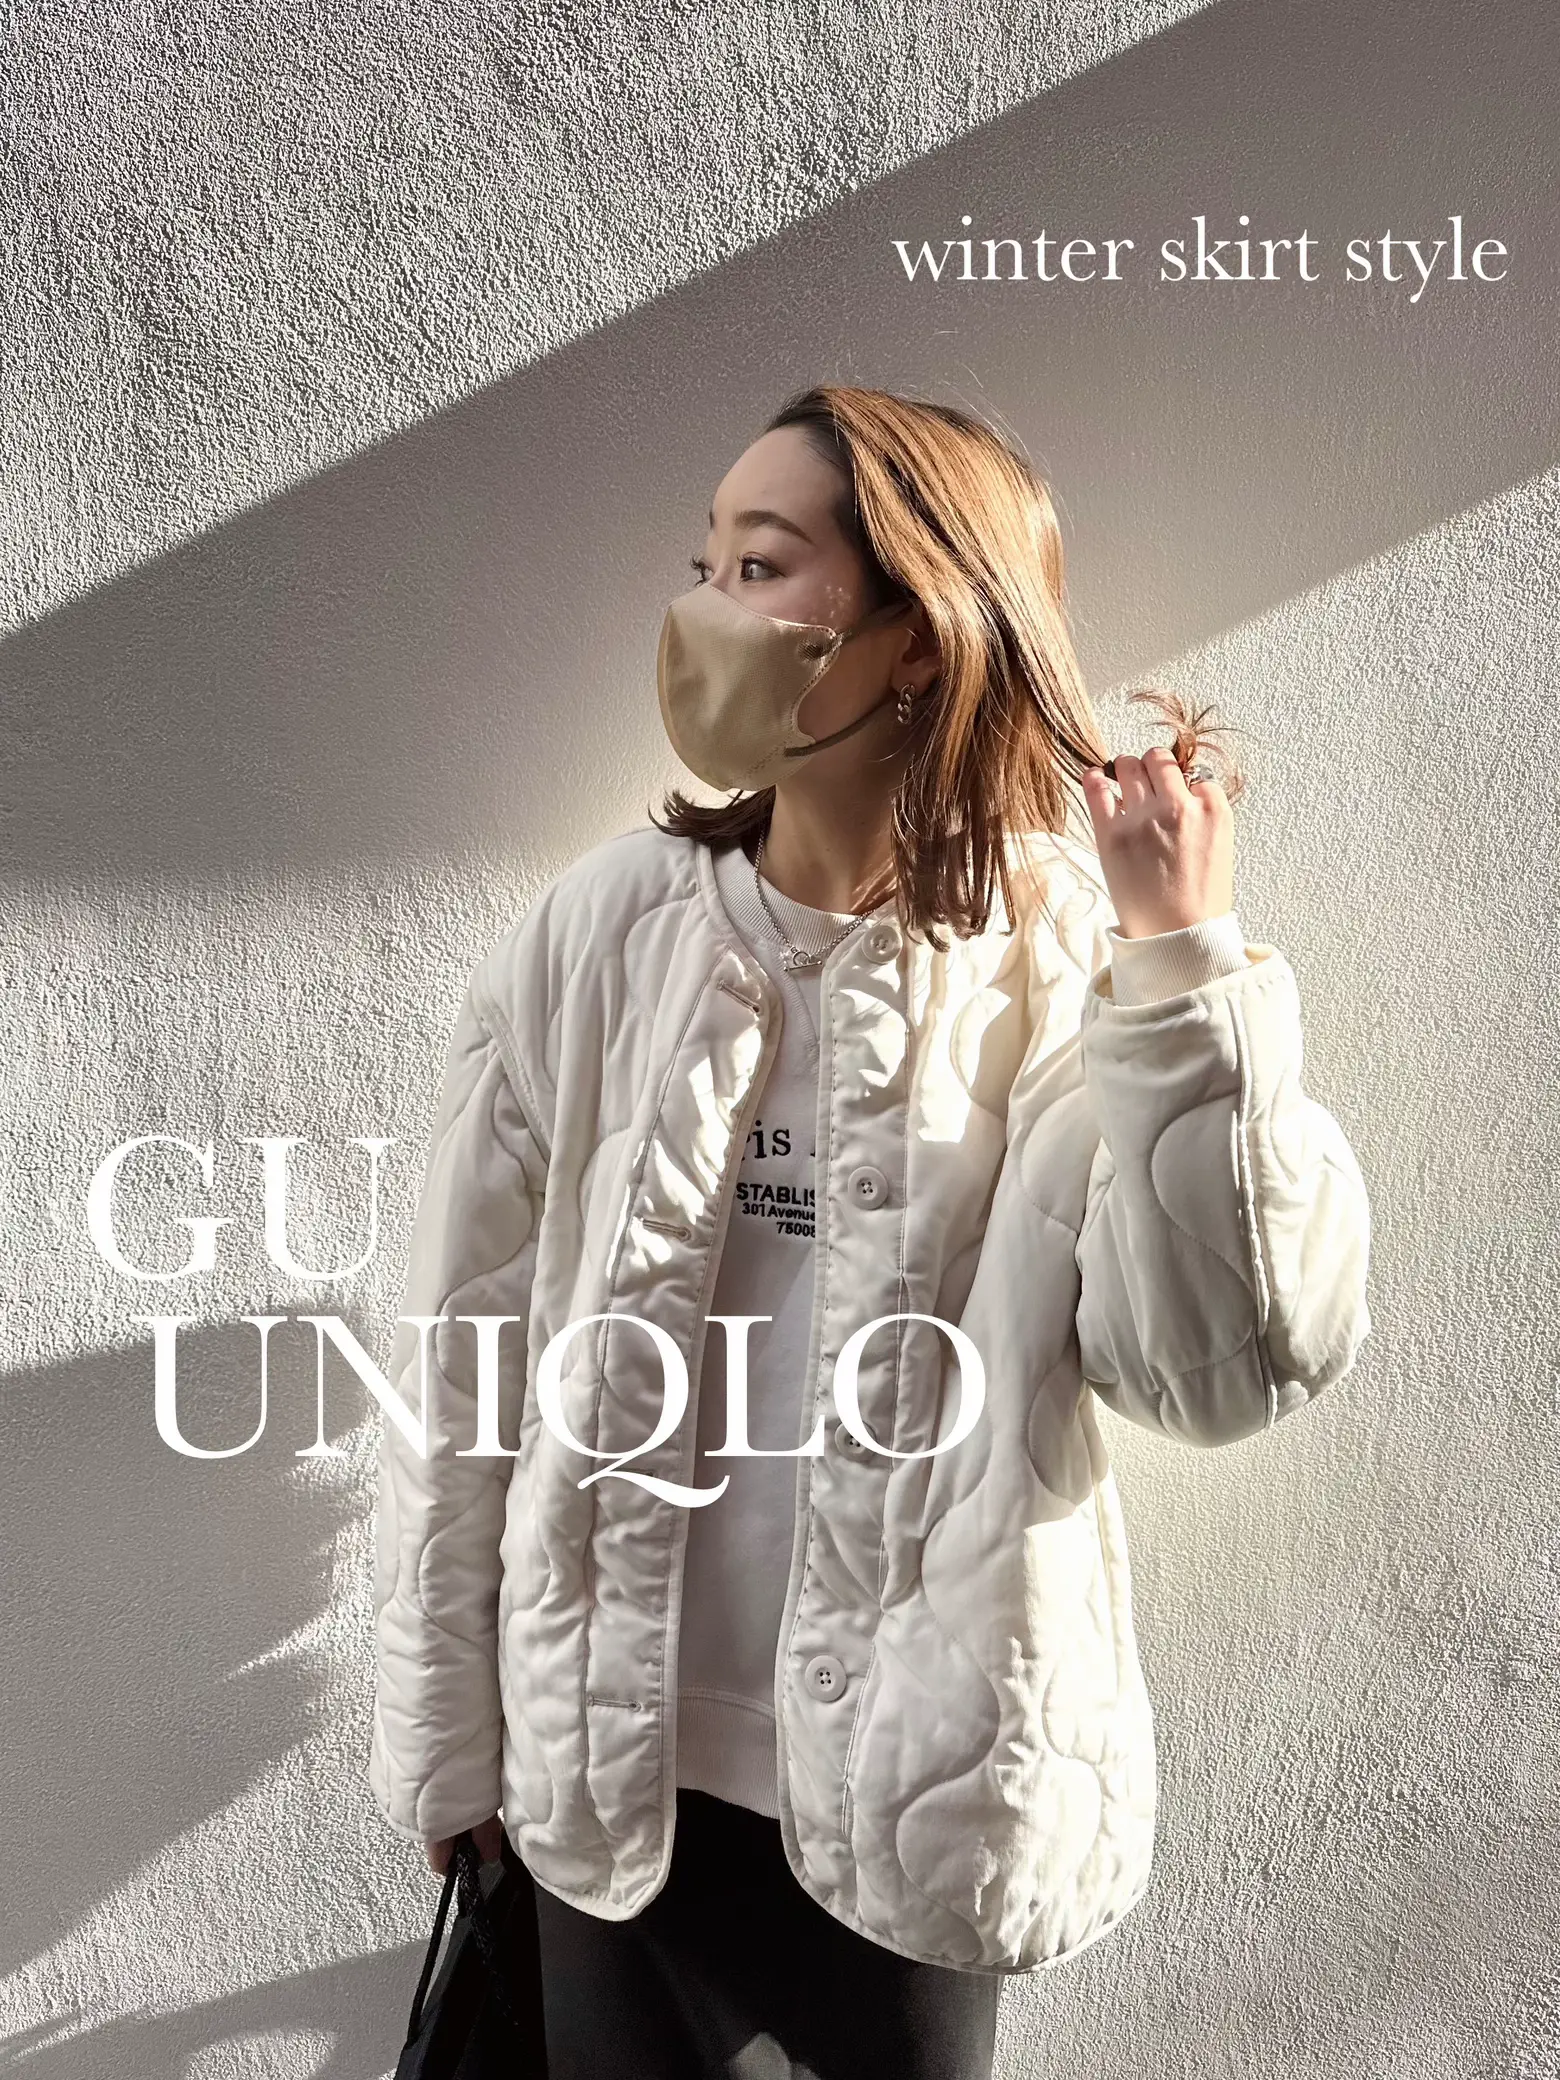 UNIQLO GU購入品 タイトスカートコーデ   YumiCa cmが投稿した